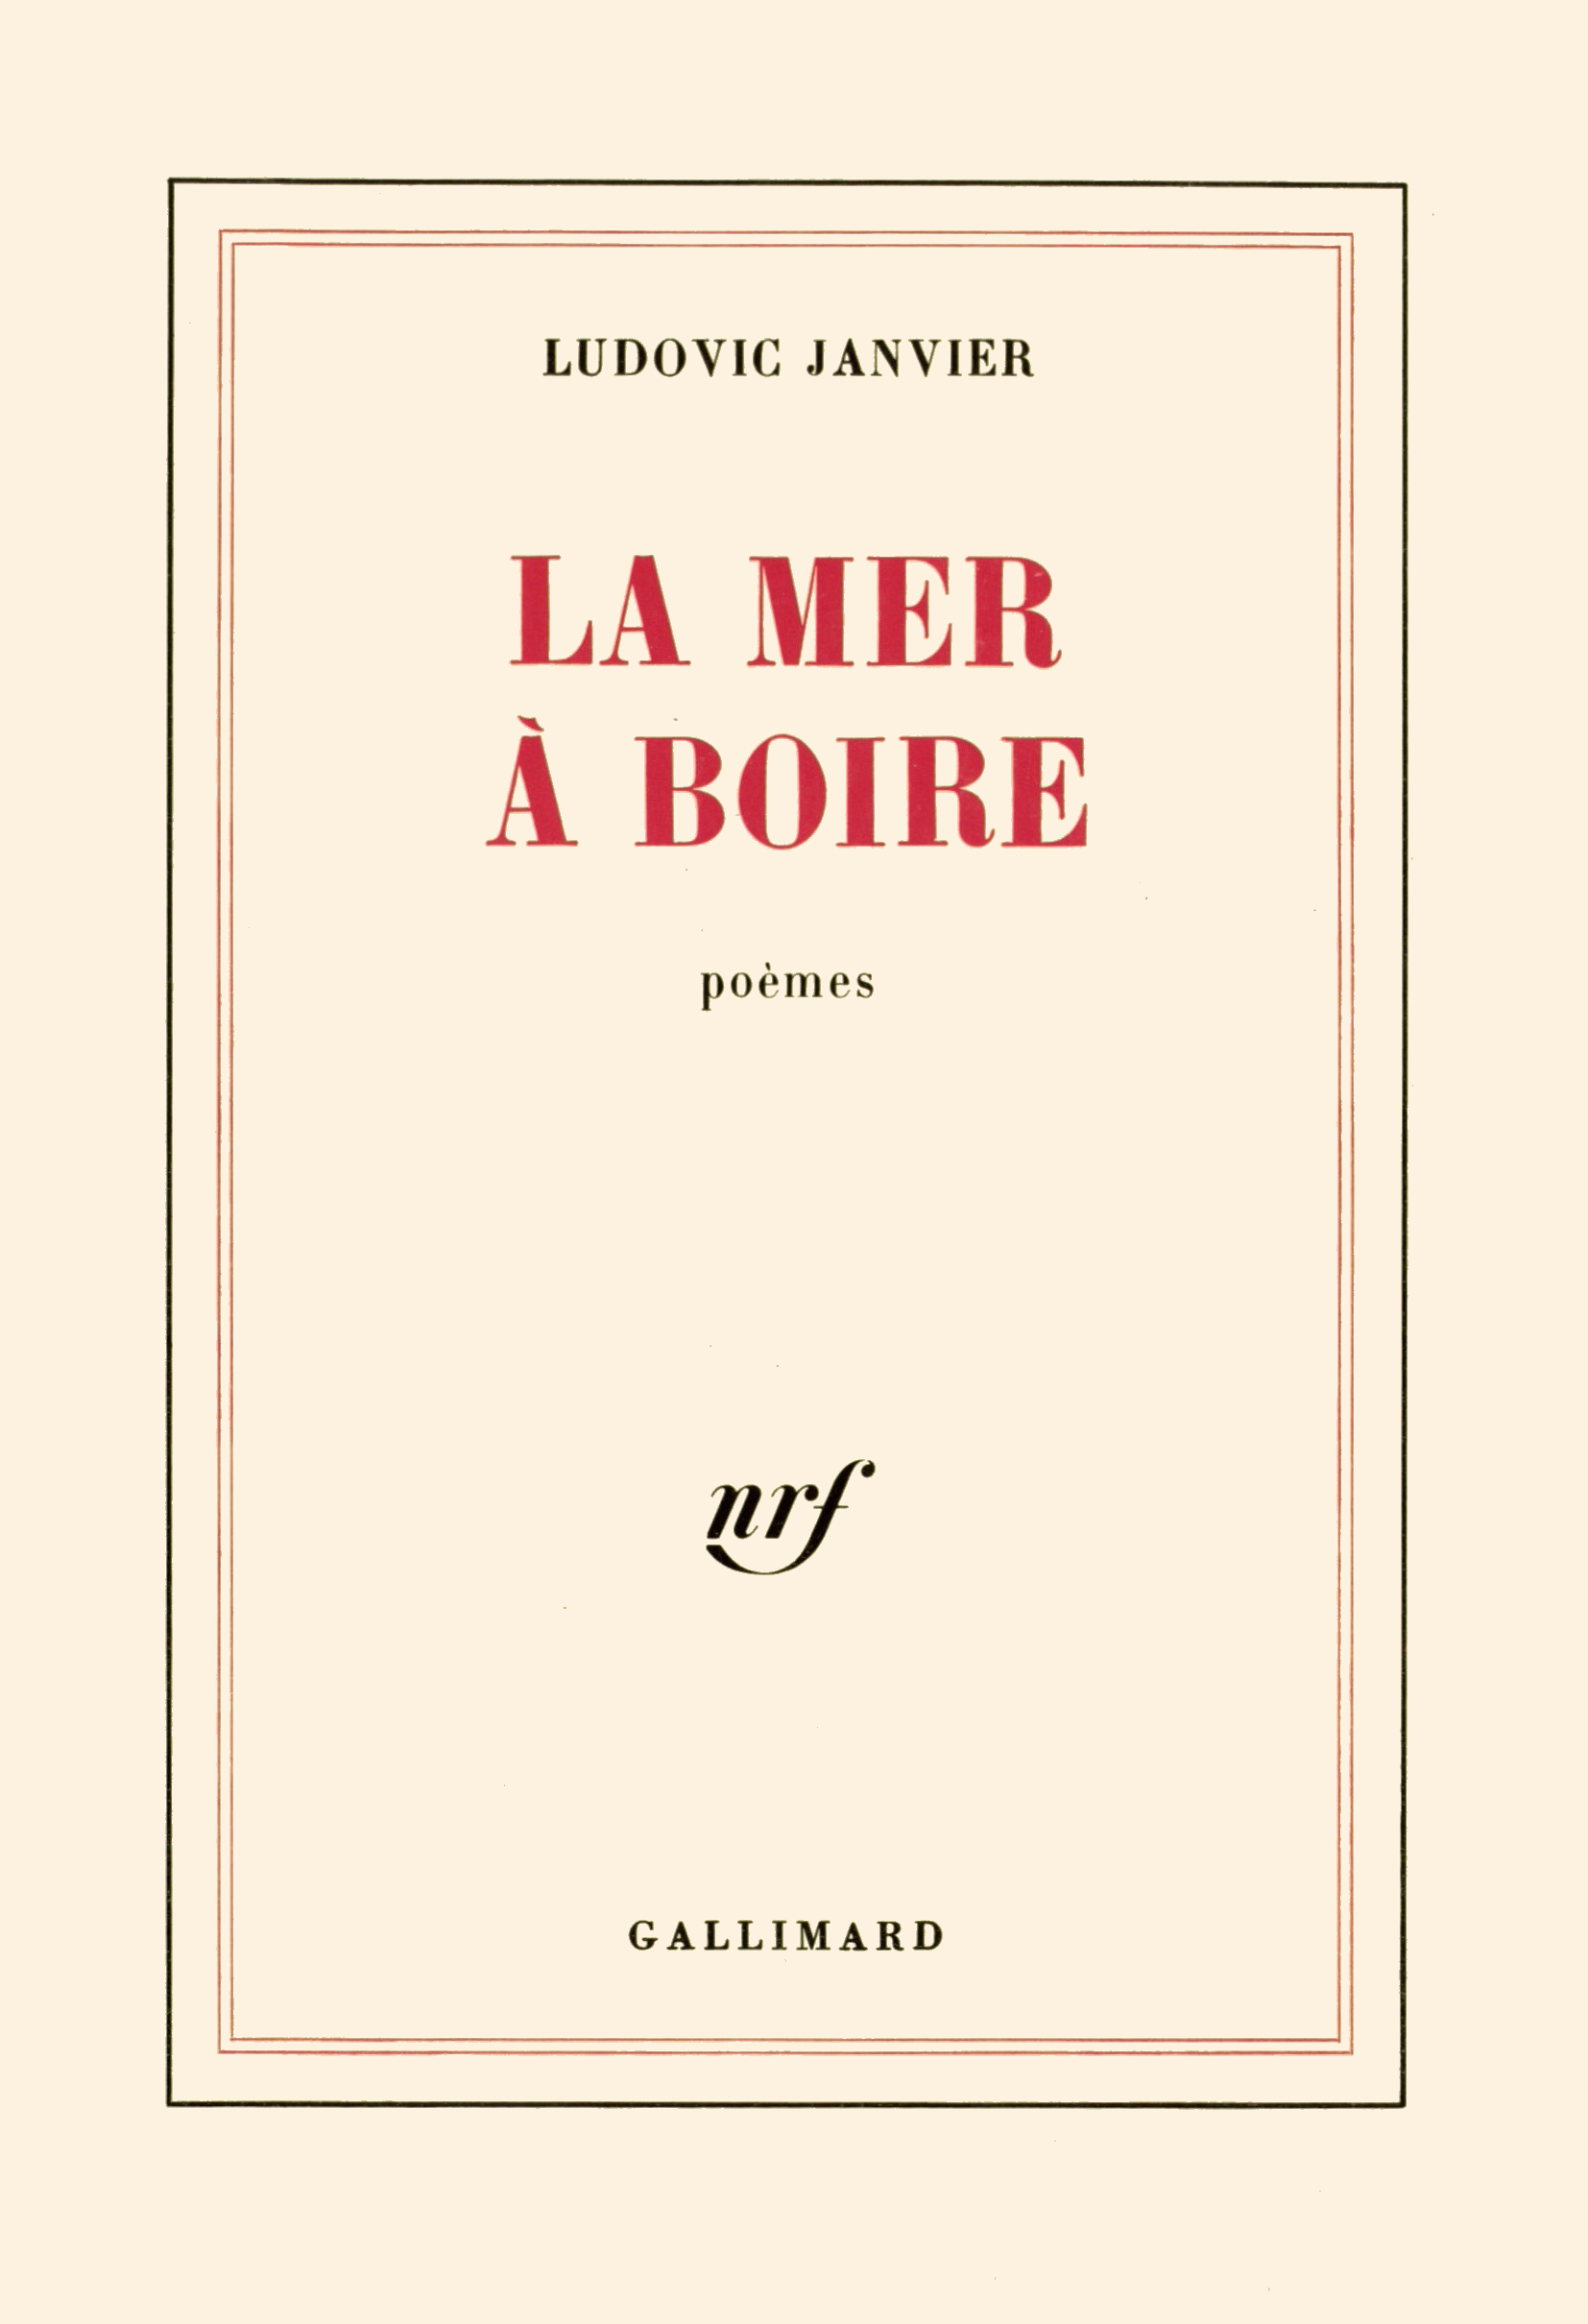 La mer à boire - Blanche - GALLIMARD - Site Gallimard